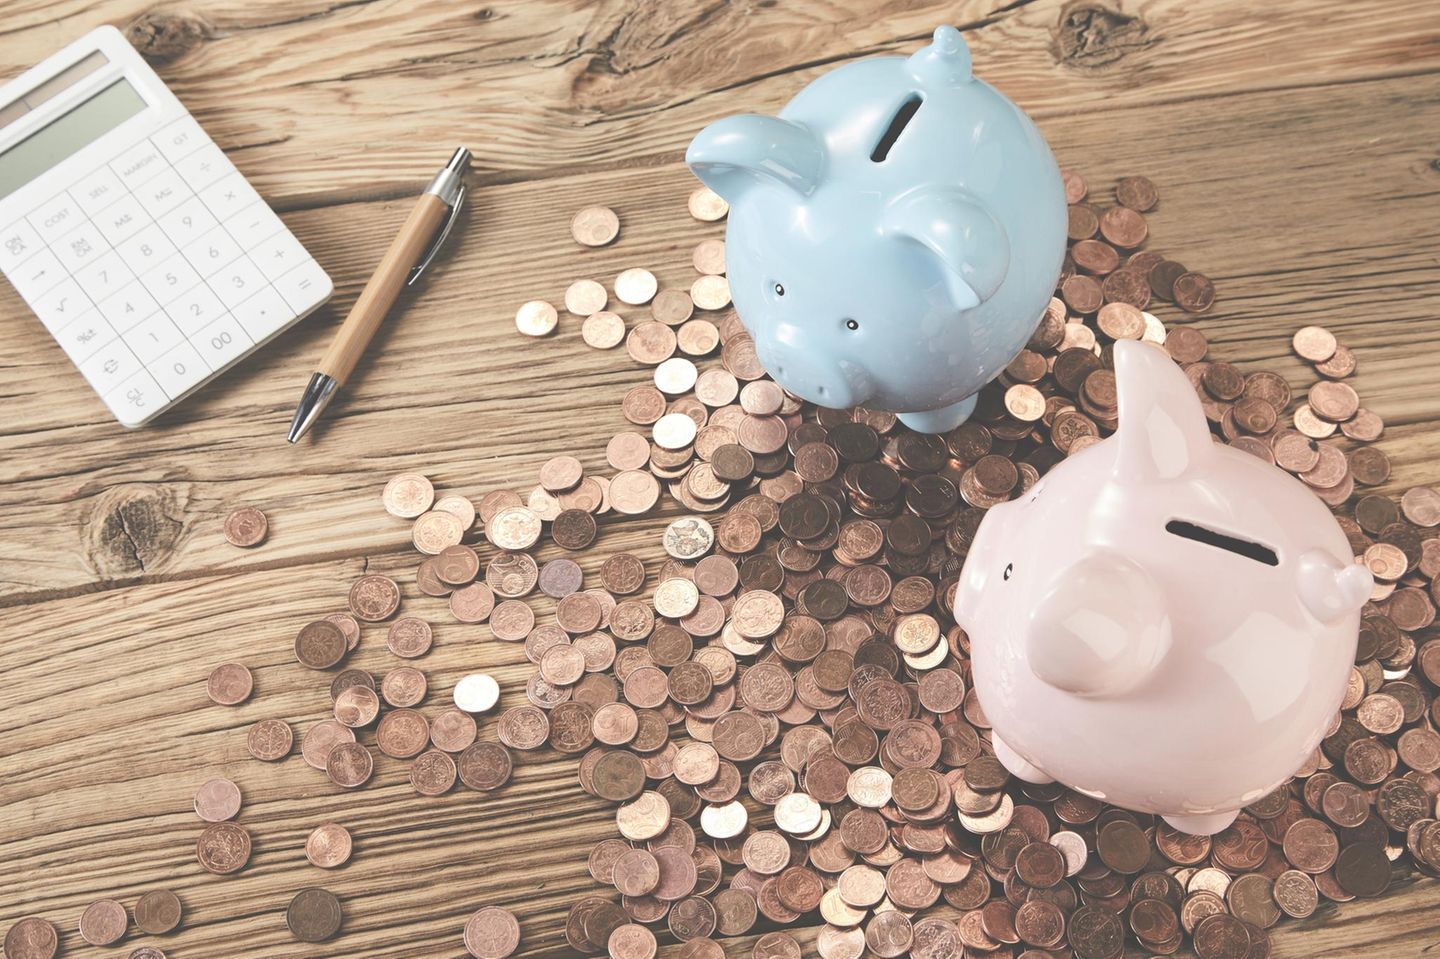 Anleitung zum Geld sparen: Kleingeld und Sparschweine